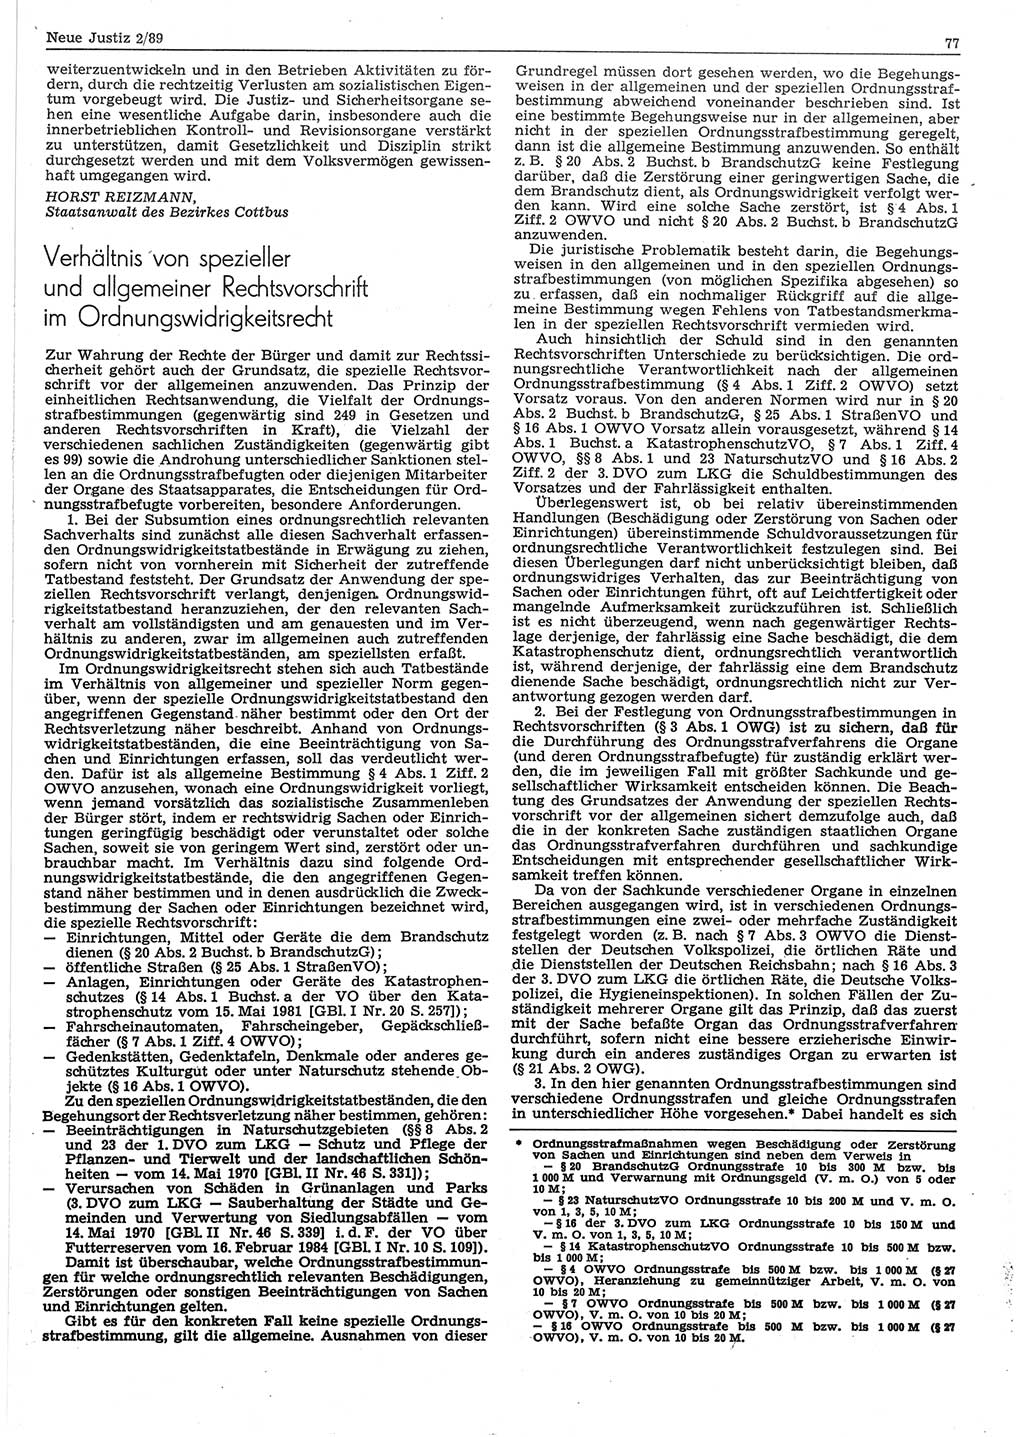 Neue Justiz (NJ), Zeitschrift für sozialistisches Recht und Gesetzlichkeit [Deutsche Demokratische Republik (DDR)], 43. Jahrgang 1989, Seite 77 (NJ DDR 1989, S. 77)